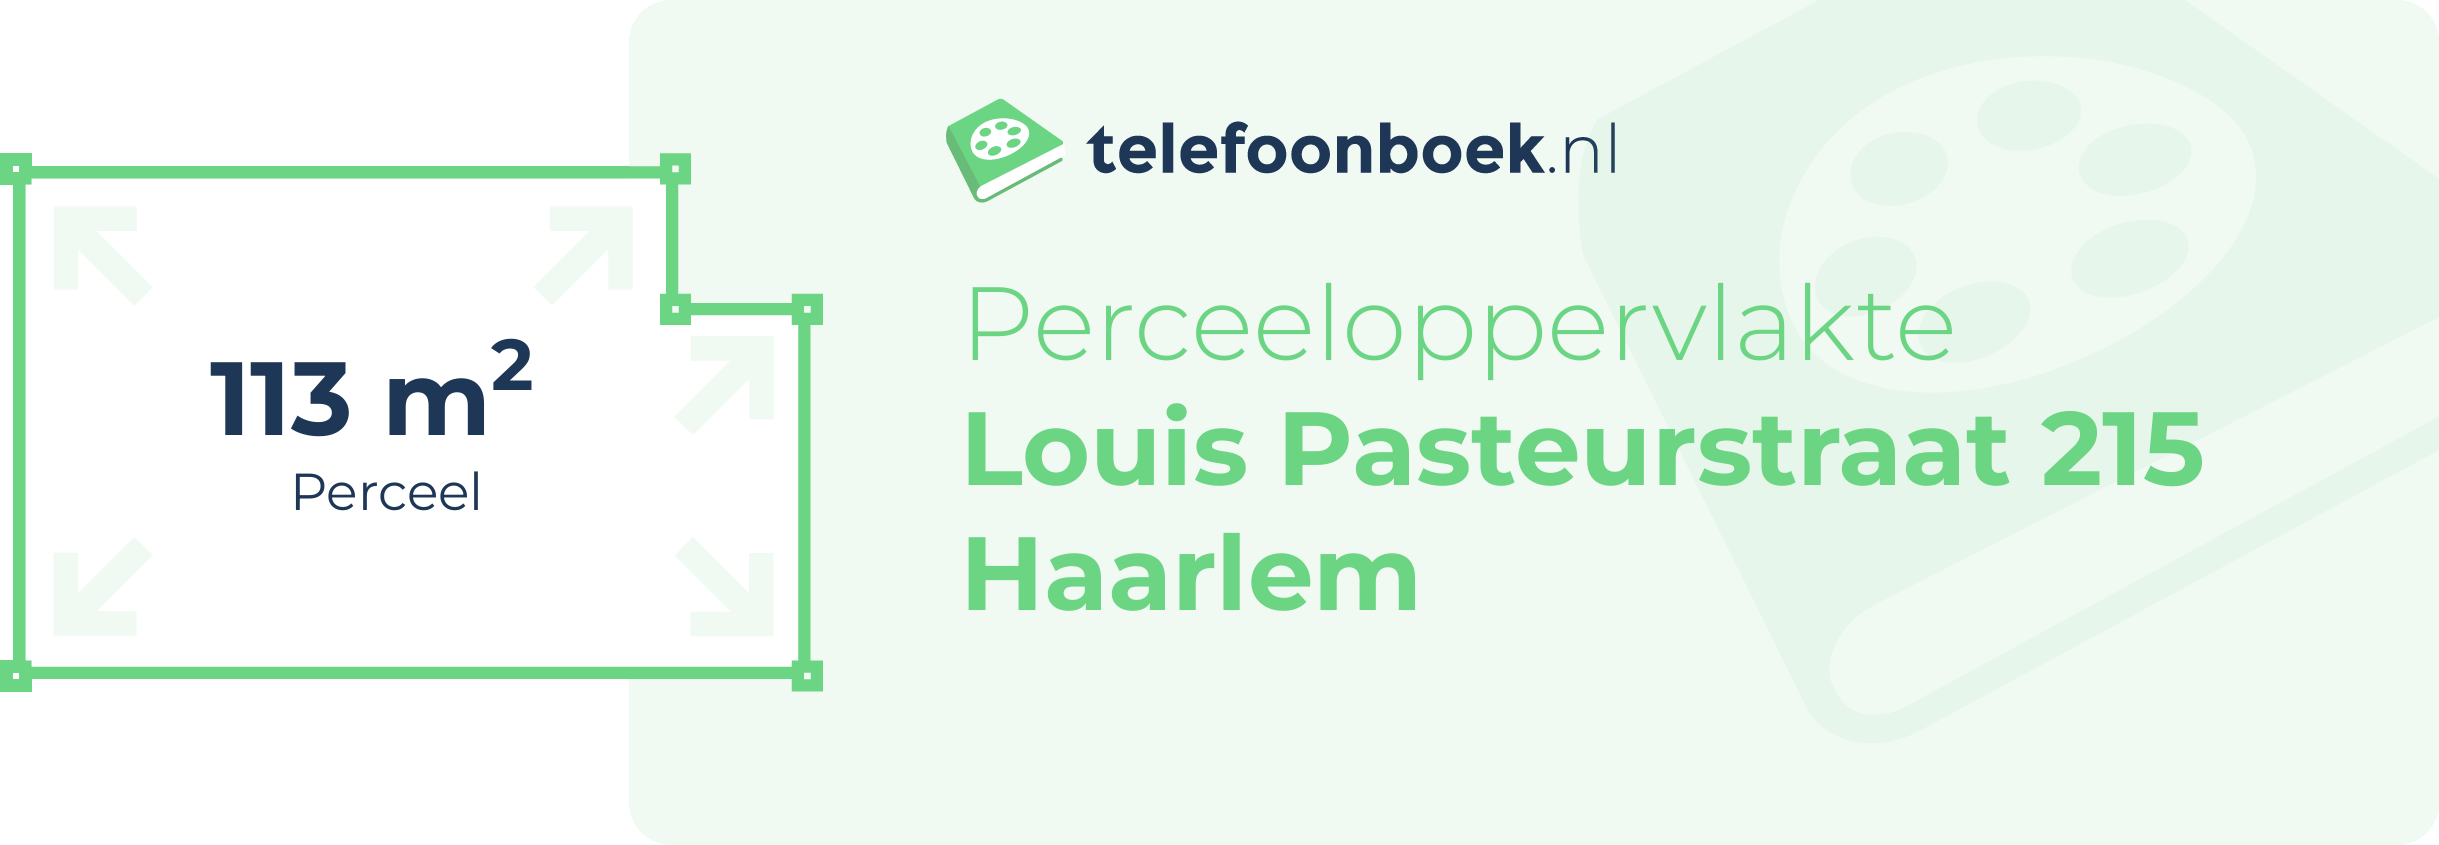 Perceeloppervlakte Louis Pasteurstraat 215 Haarlem